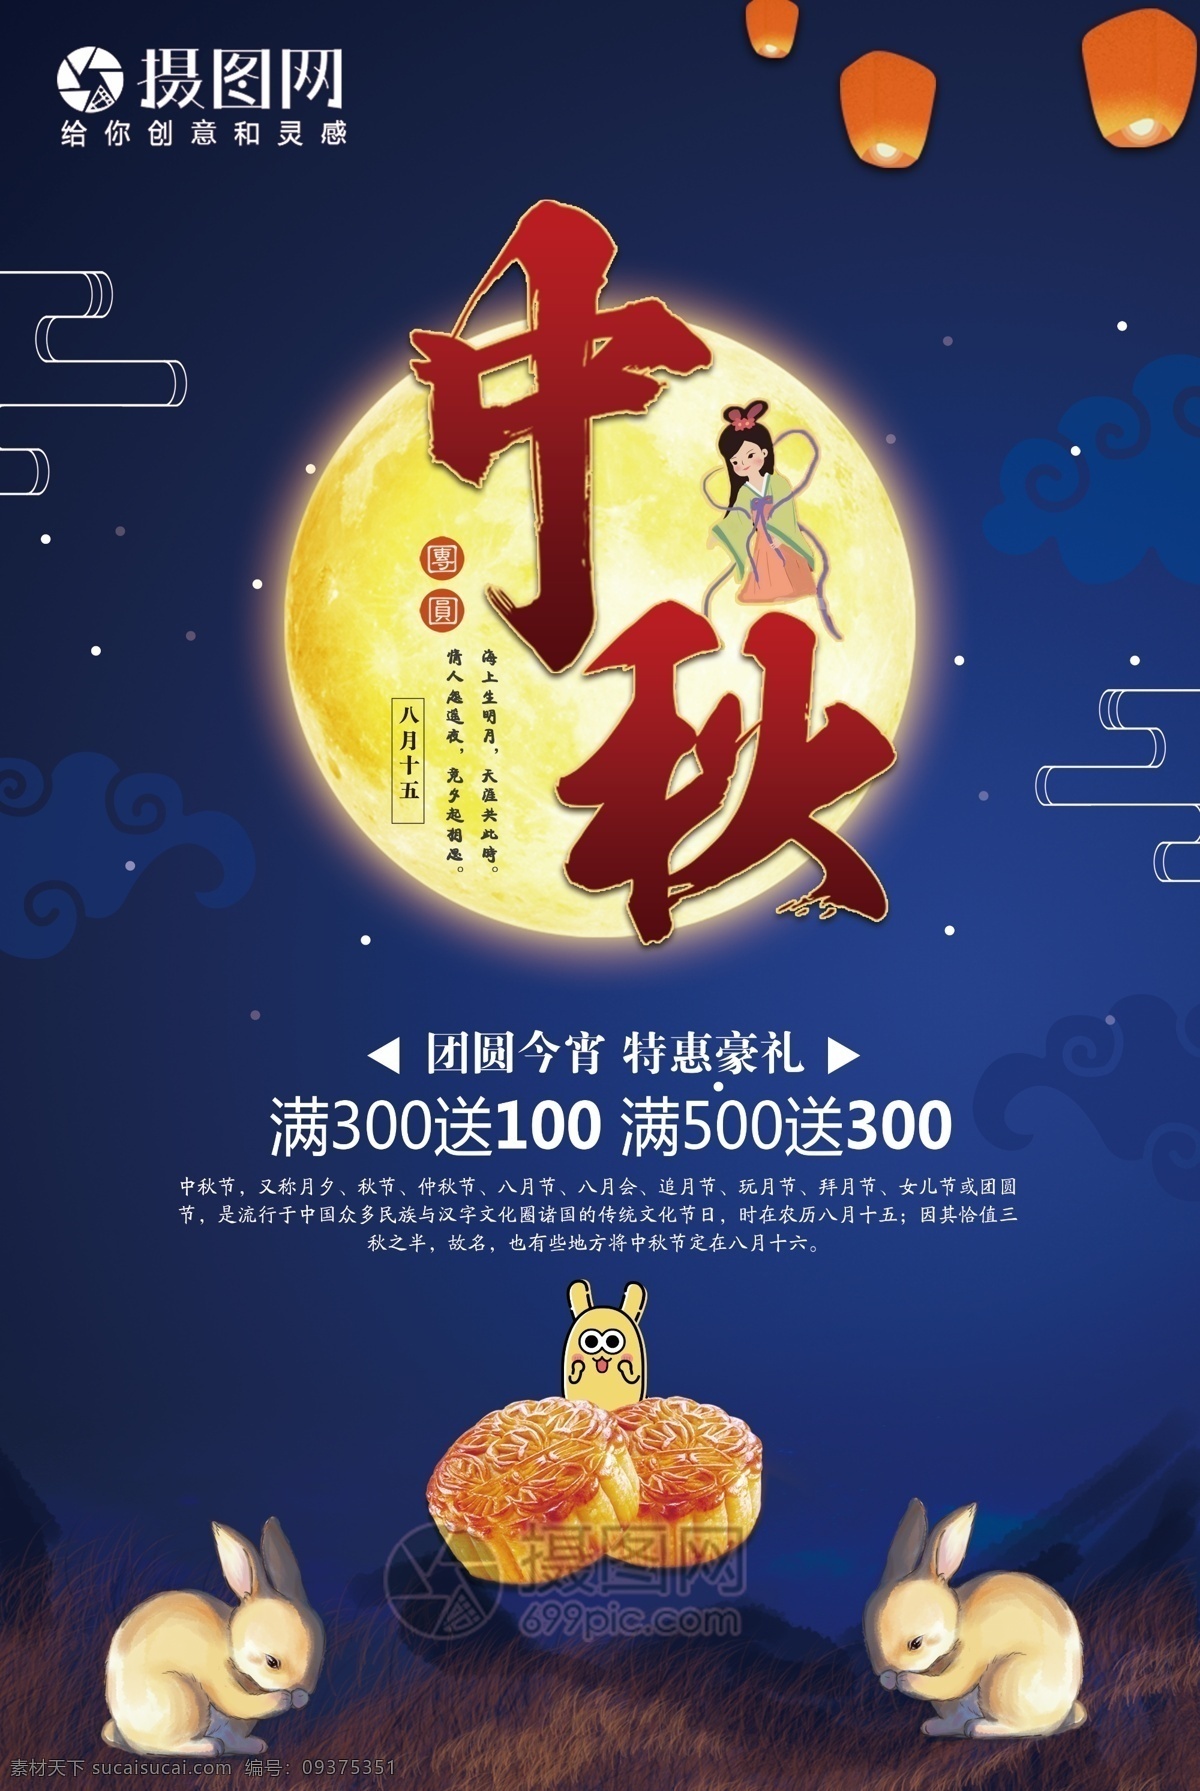 中秋节 月饼 促销 海报 八月十五 传统节日 节日海报 月饼促销 月亮 中秋促销 ip形象